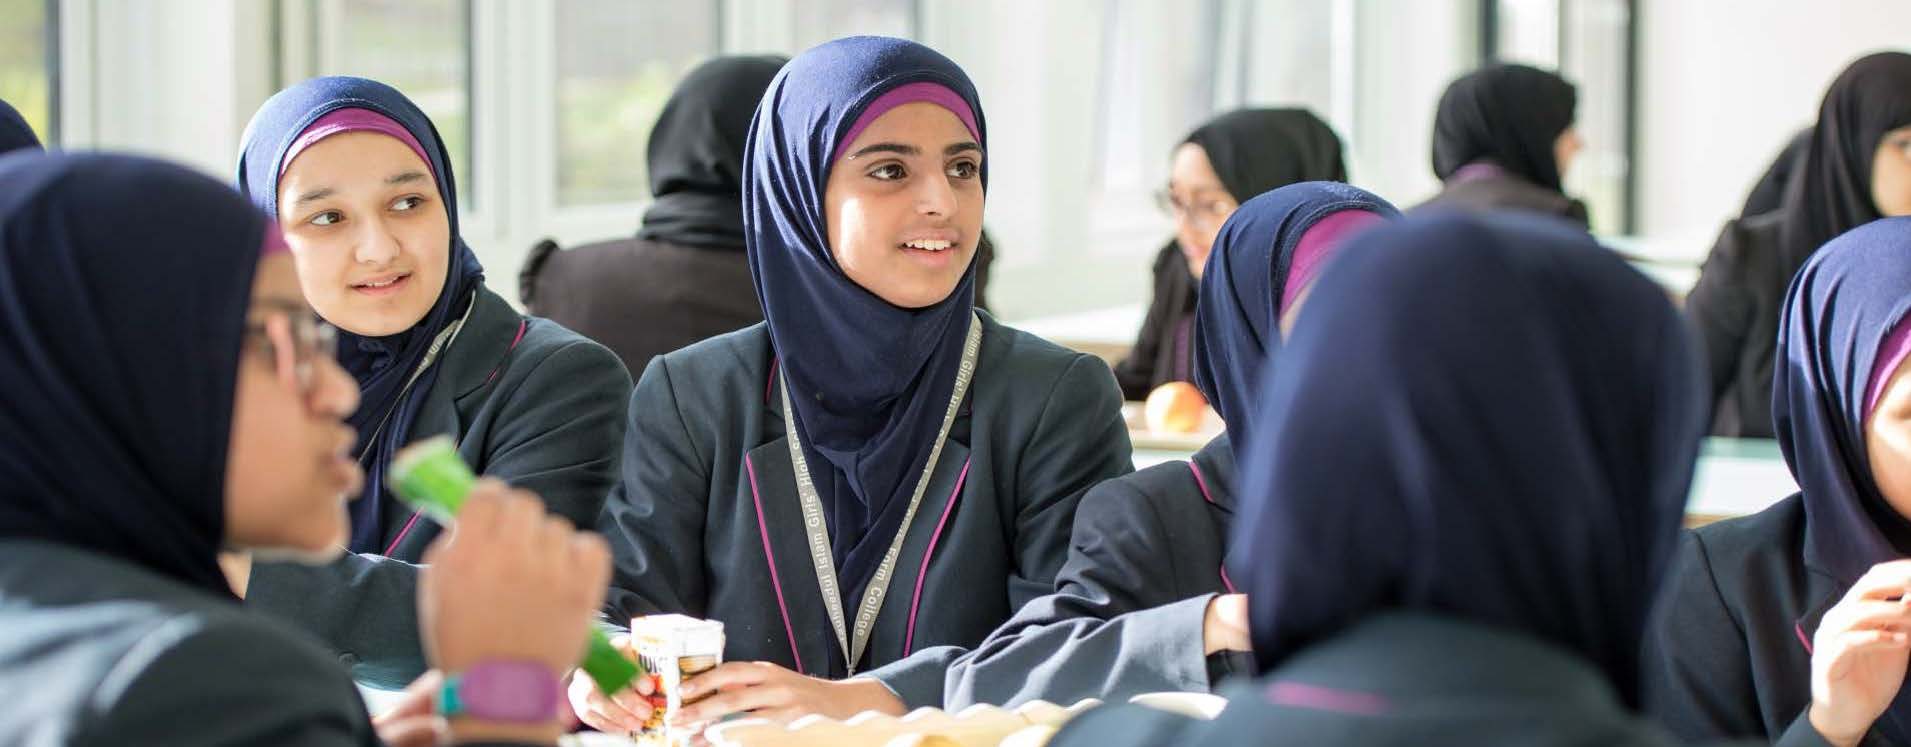 Muslim Faith Schools Top List of GCSE League Tables - About Islam